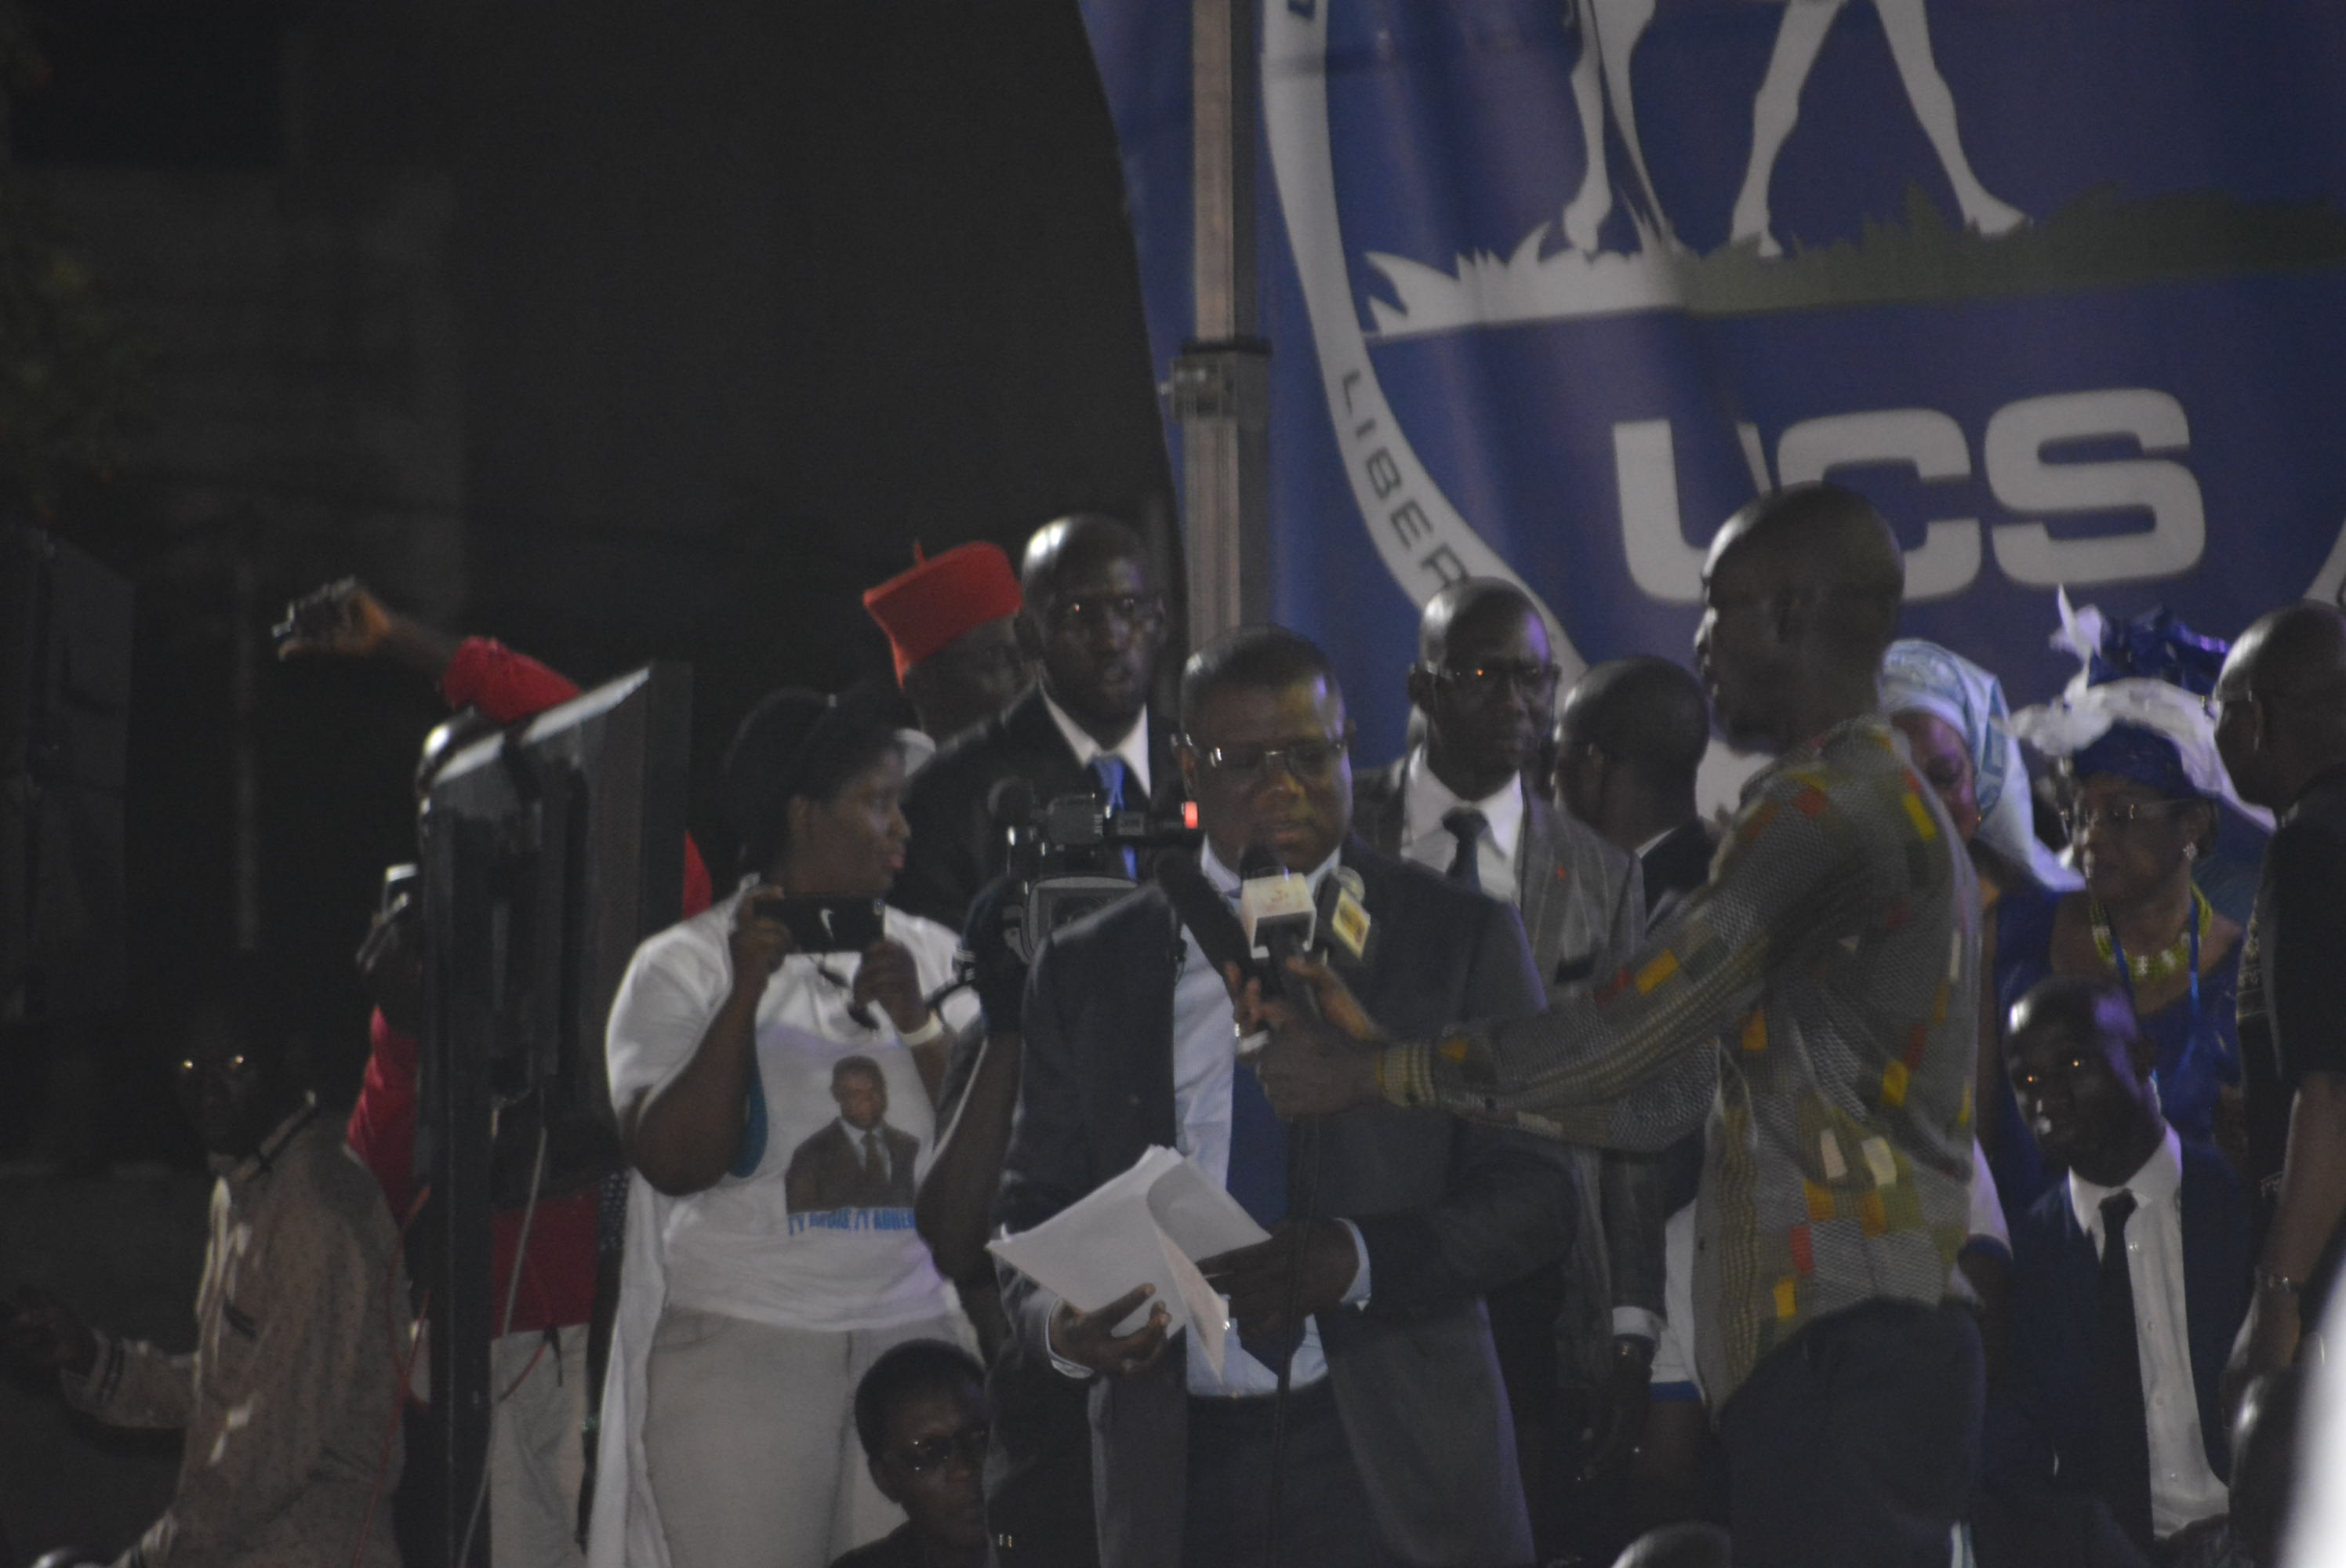 Abdoulaye Baldé : « L'UCS est trop grand pour se fondre dans un autre parti »